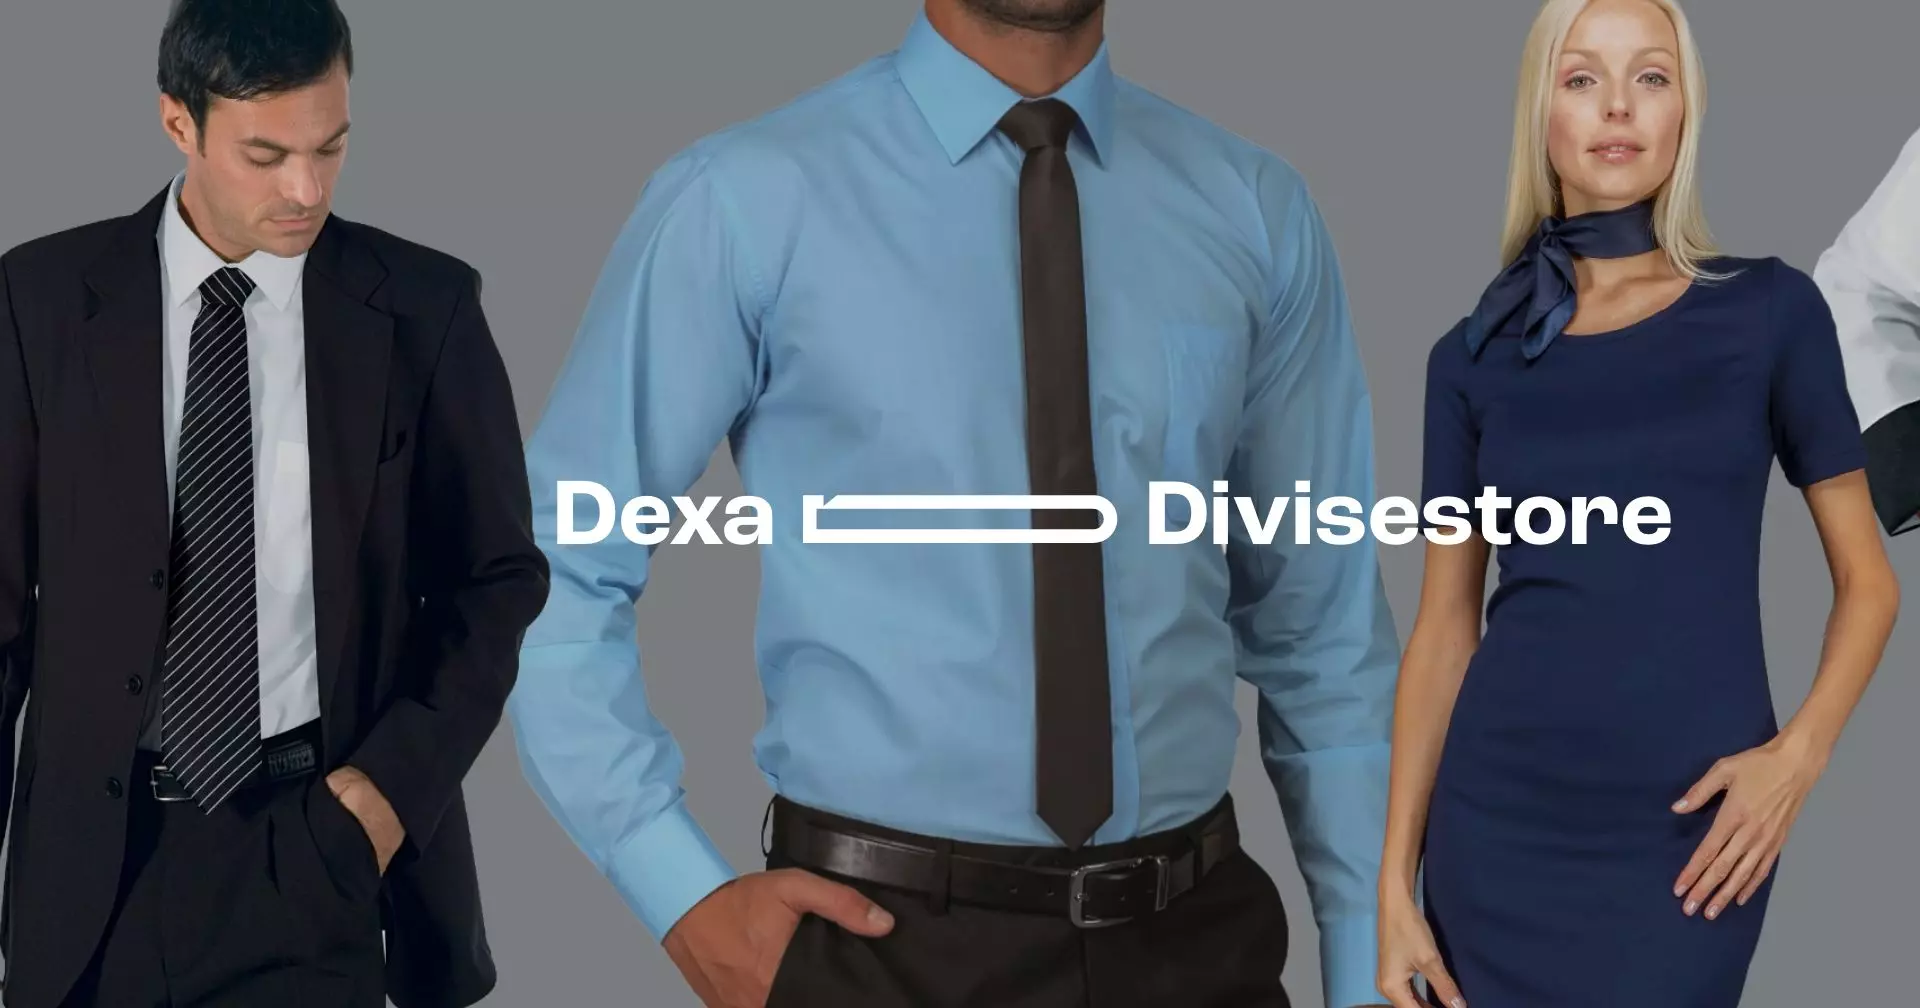 Le migliori divise professionali sono online: Dexa ha realizzato l’e-commerce di abbigliamento da lavoro Divise Store.